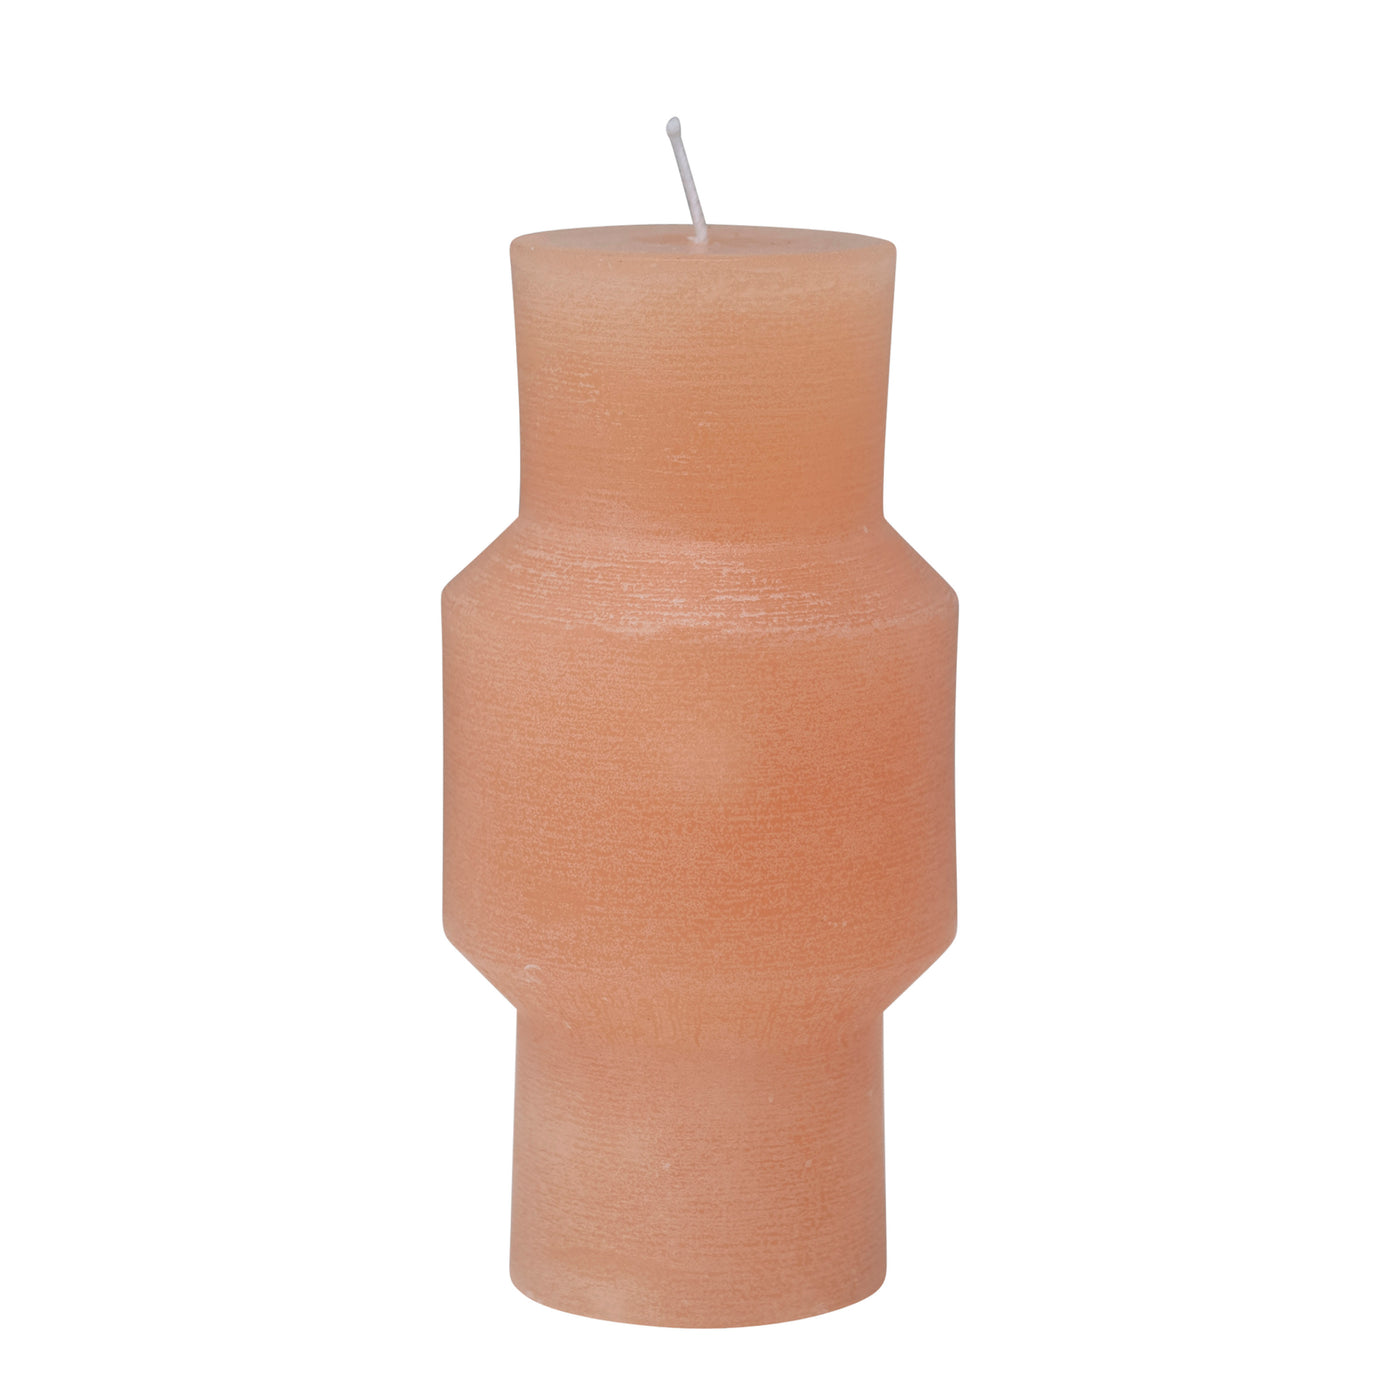 Unscented Totem Pillar Candle 3"x6" , Citrus